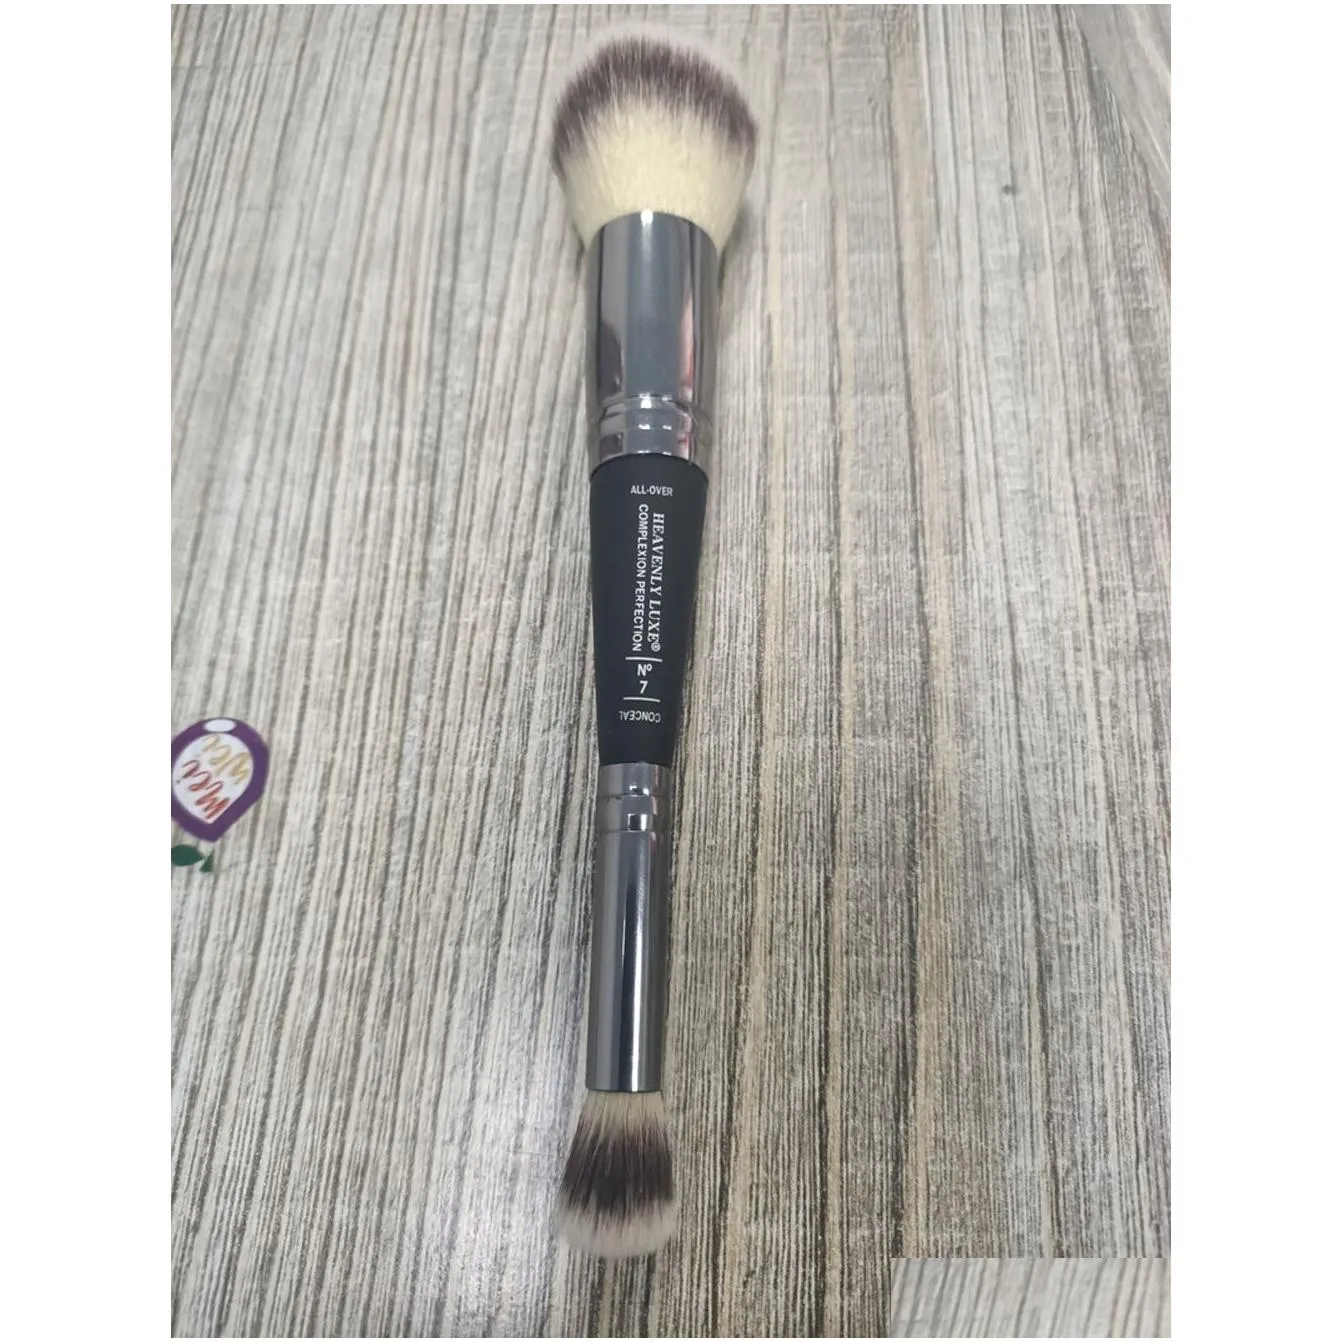 BRUSH 7 Brushes Deluxe Beauty Makeup Face Blender0123455428015